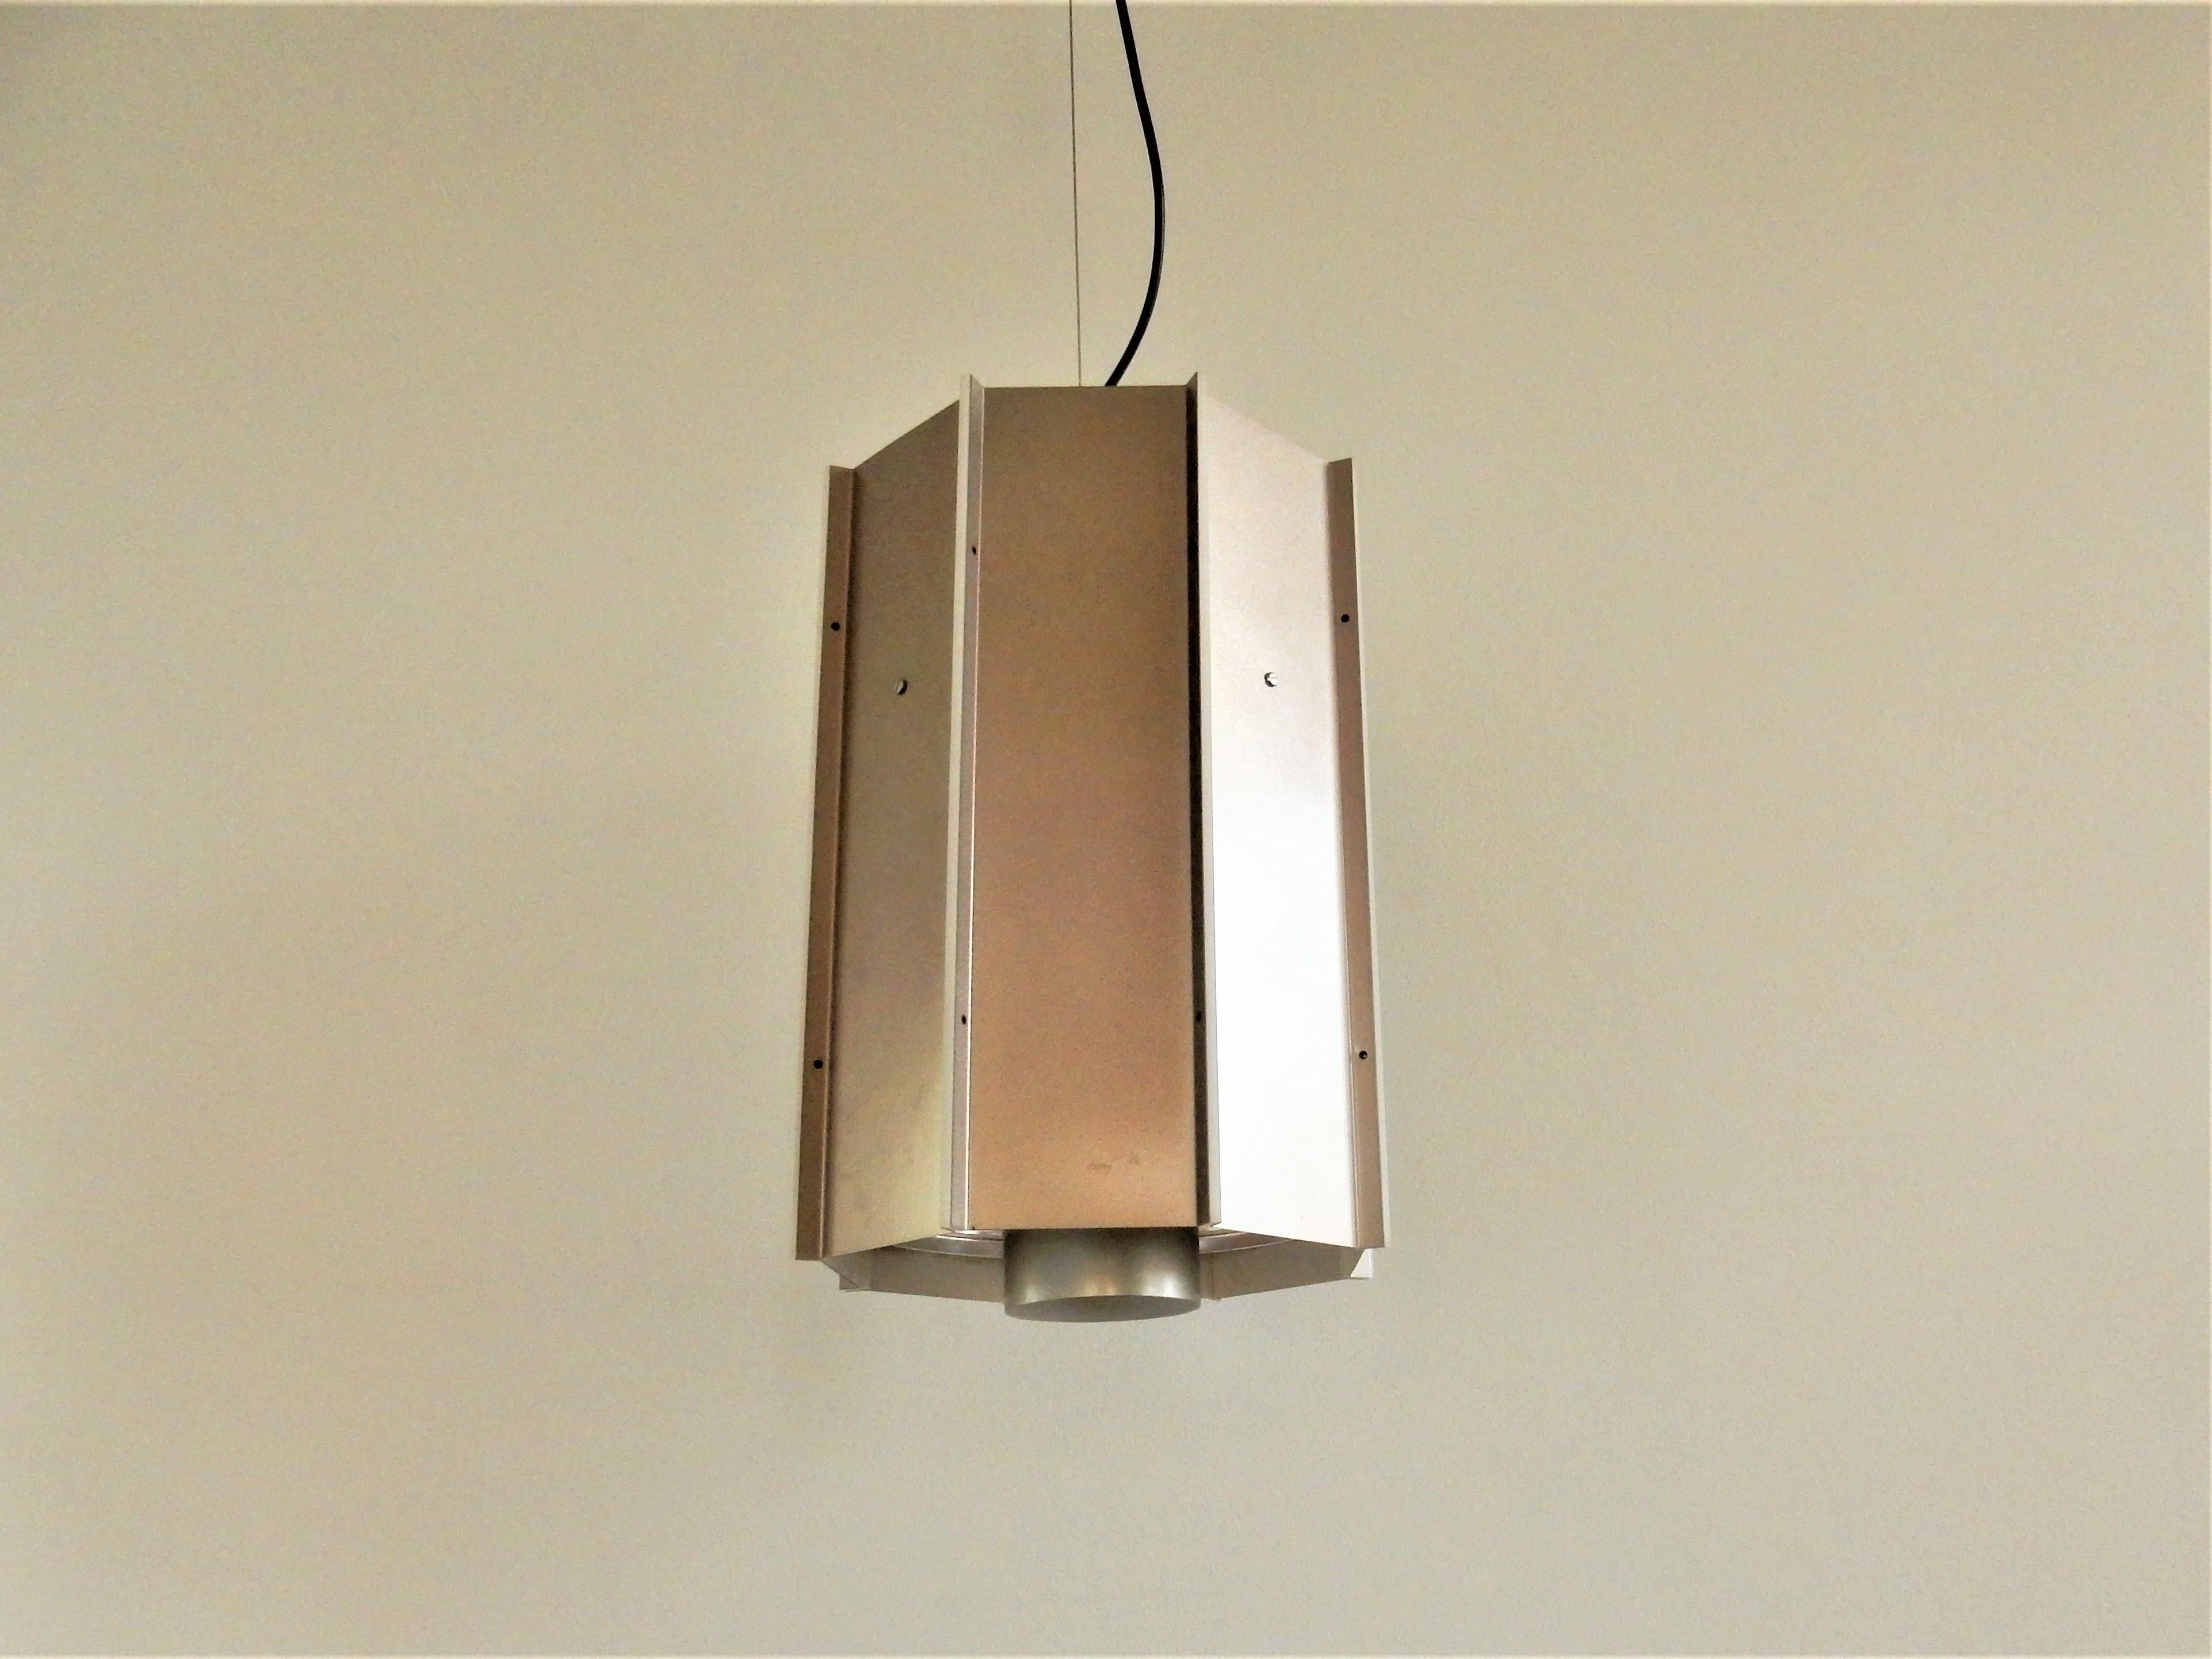 Dies ist eine bronze/graue, achteckige Lampe, mit Acrylschichten dazwischen, die einen schönen Effekt erzeugen, wenn sie leuchten. Die Lampe hat einen runden Diffusor an der Unterseite und eine Lampe an der Unterseite und 2 an der Oberseite, so dass